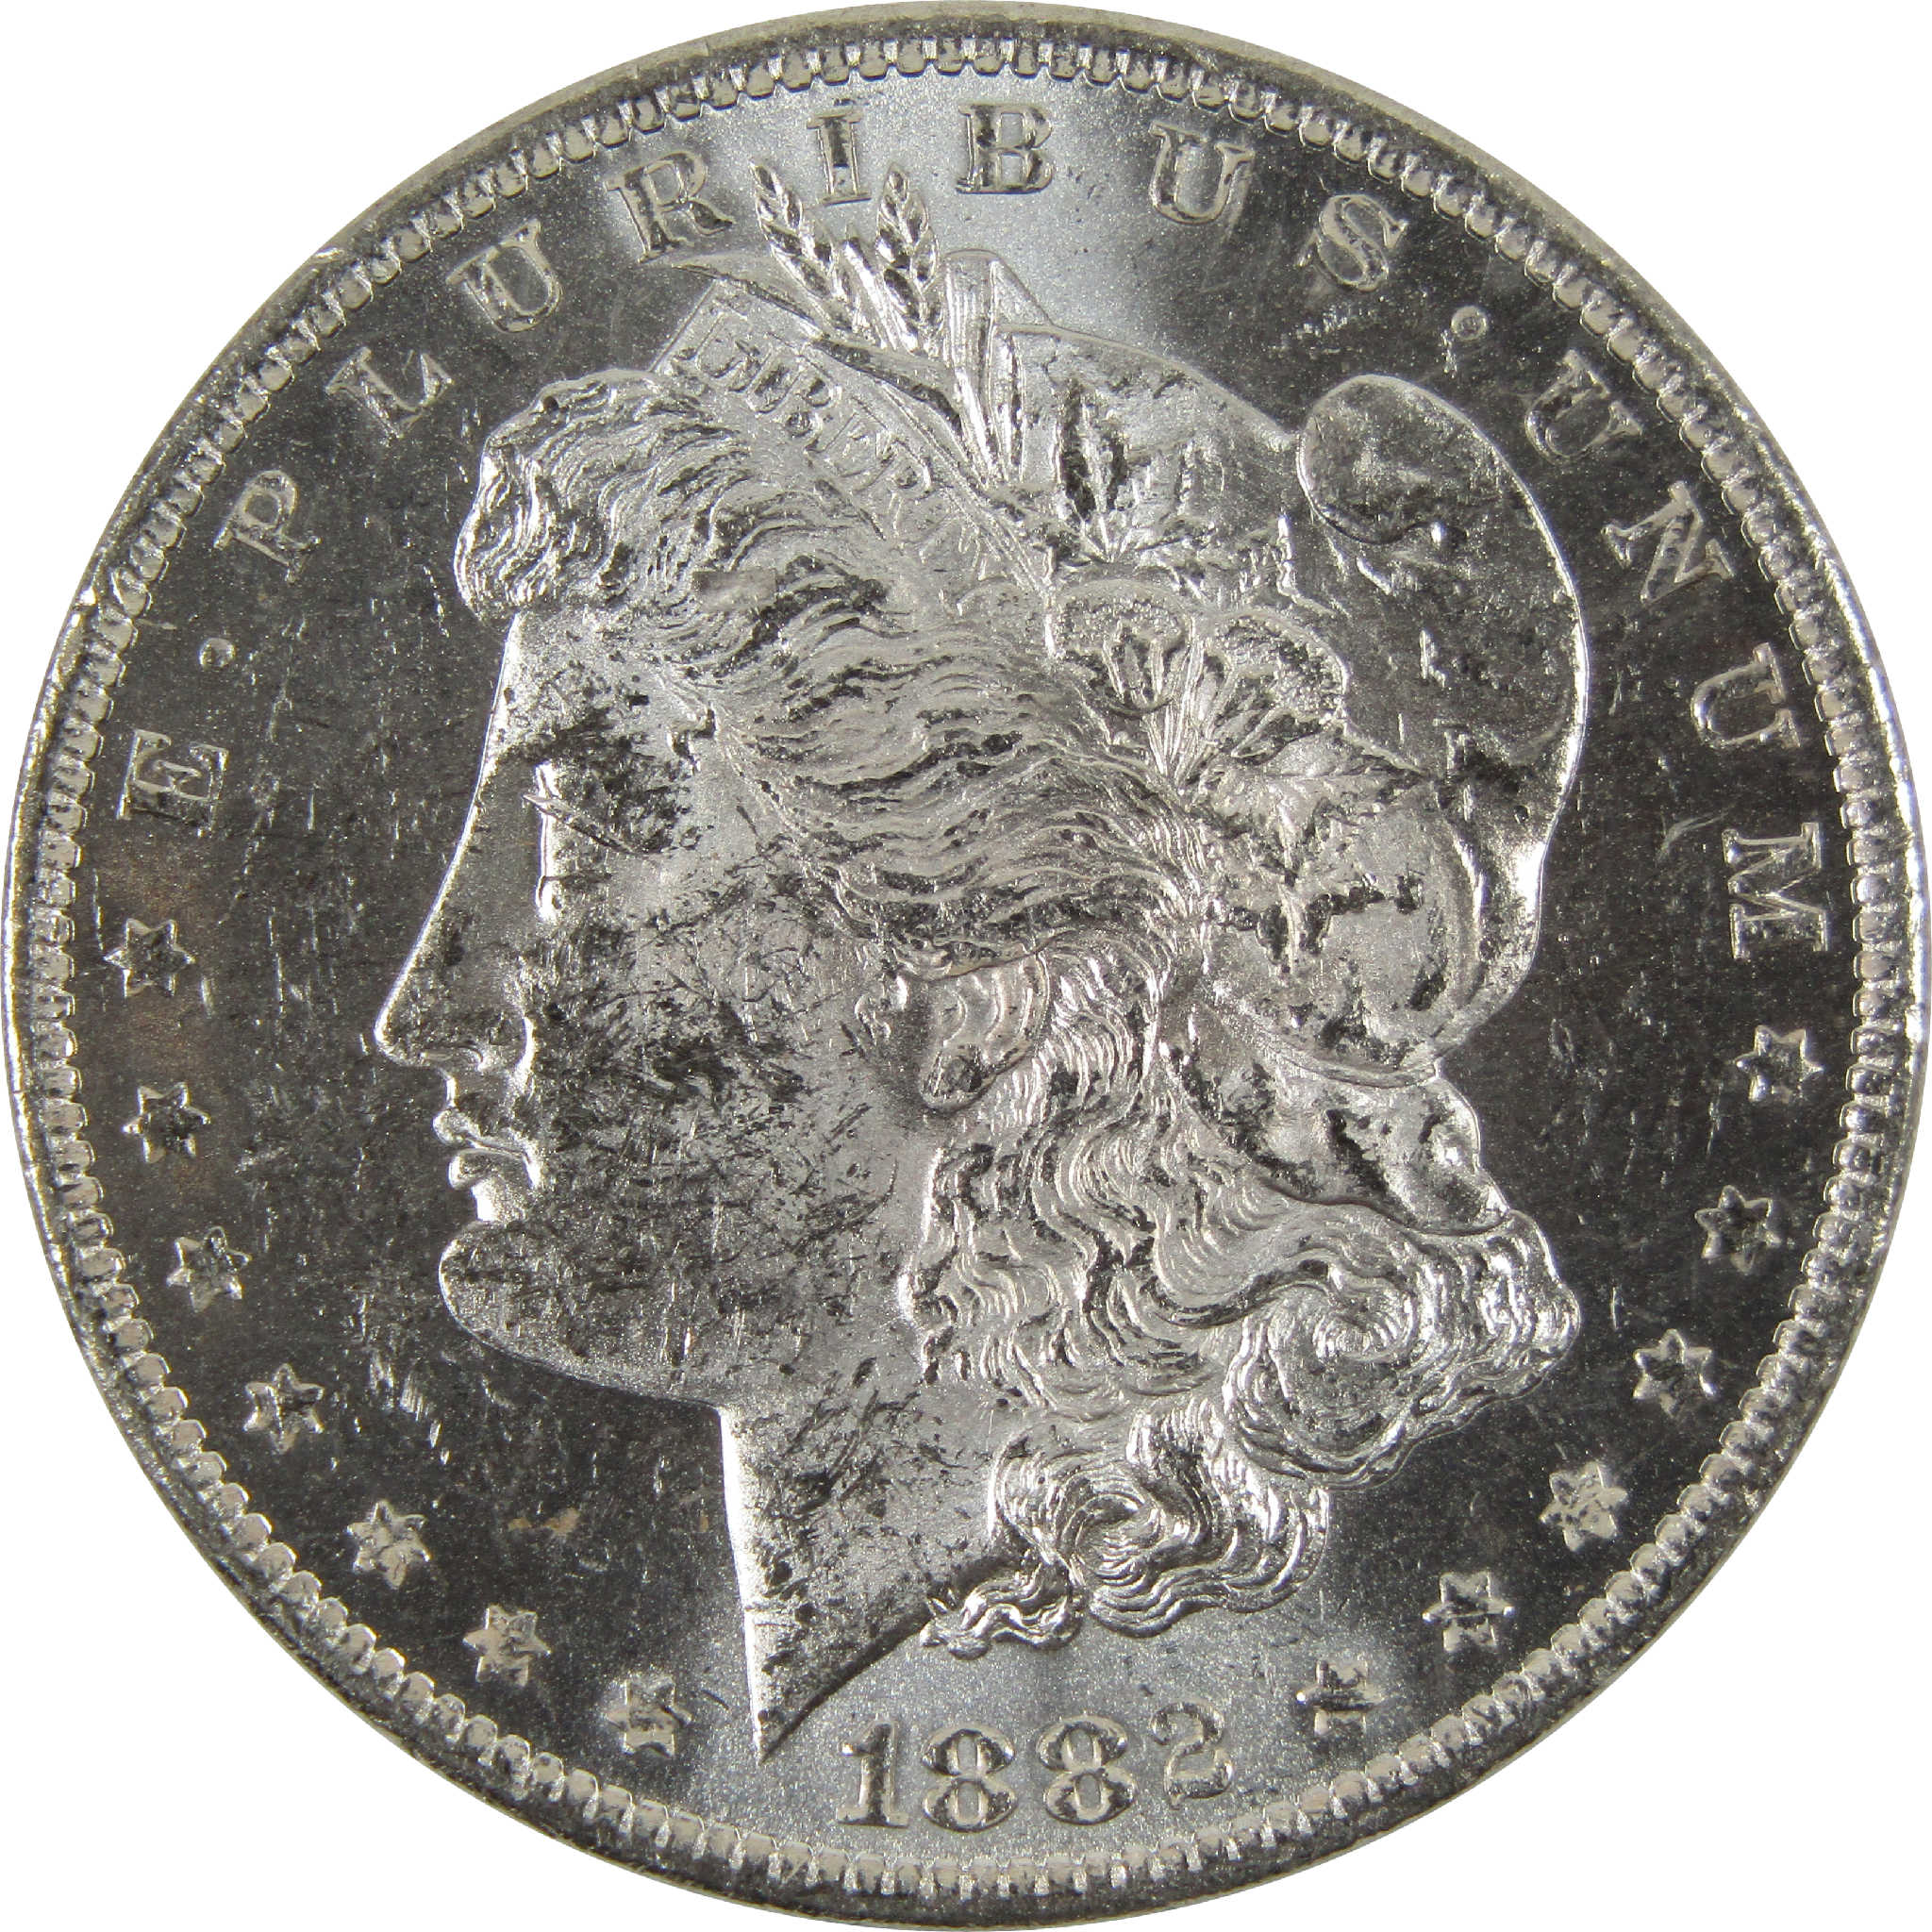 1882 O Morgan Dollar BU Uncirculated 90% Silver $1 Coin SKU:I8911 - Morgan coin - Morgan silver dollar - Morgan silver dollar for sale - Profile Coins &amp; Collectibles